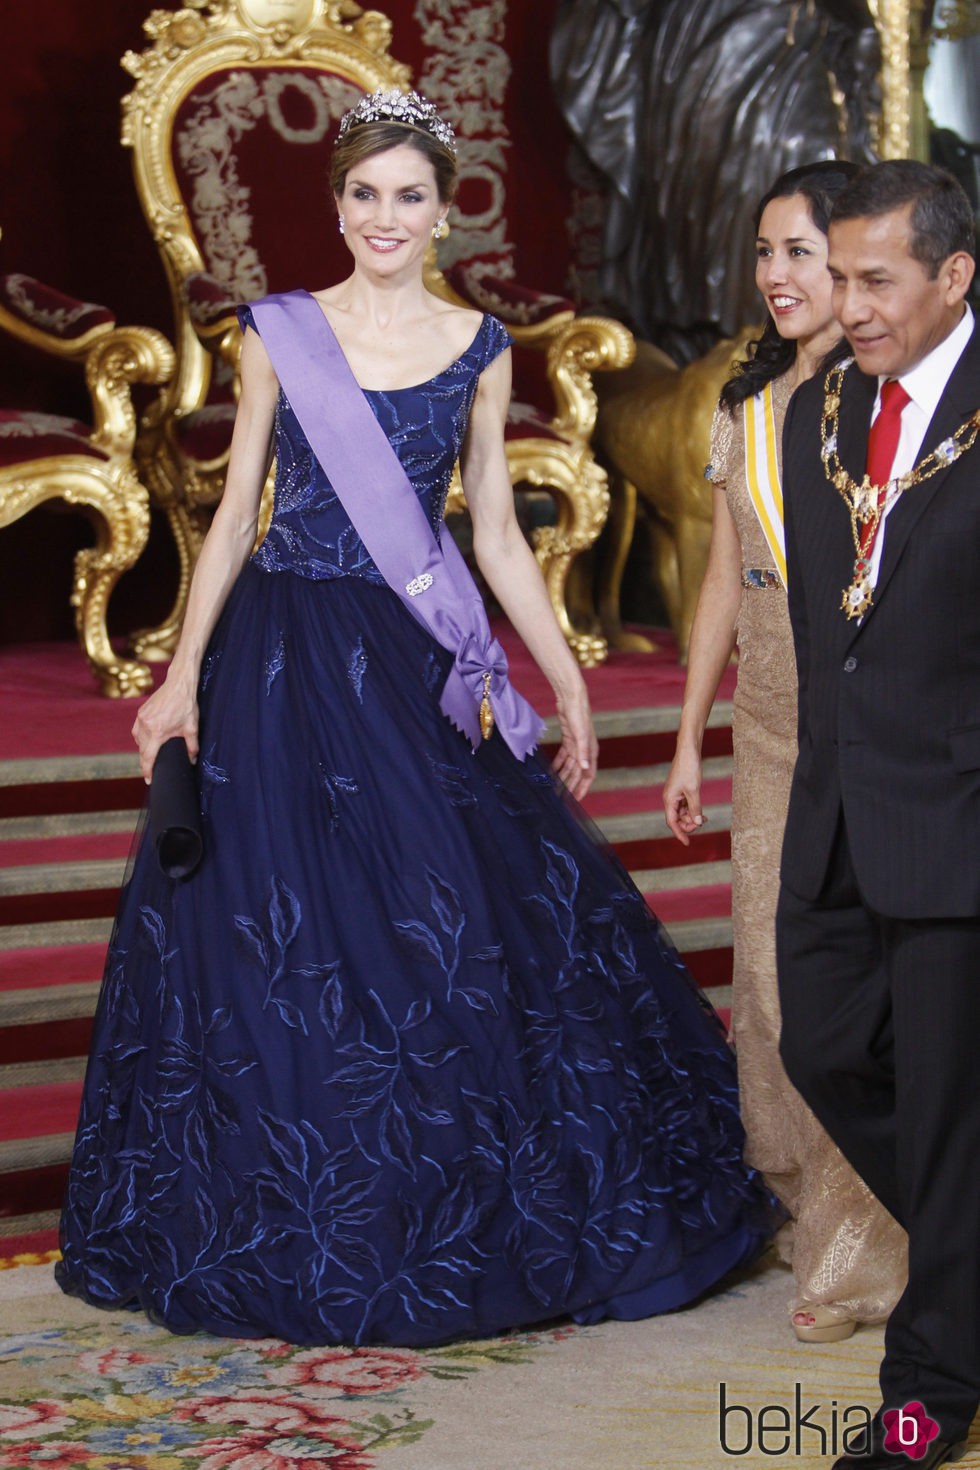 La Reina Letizia en la cena de gala al presidente de Perú y su esposa en el Palacio Real